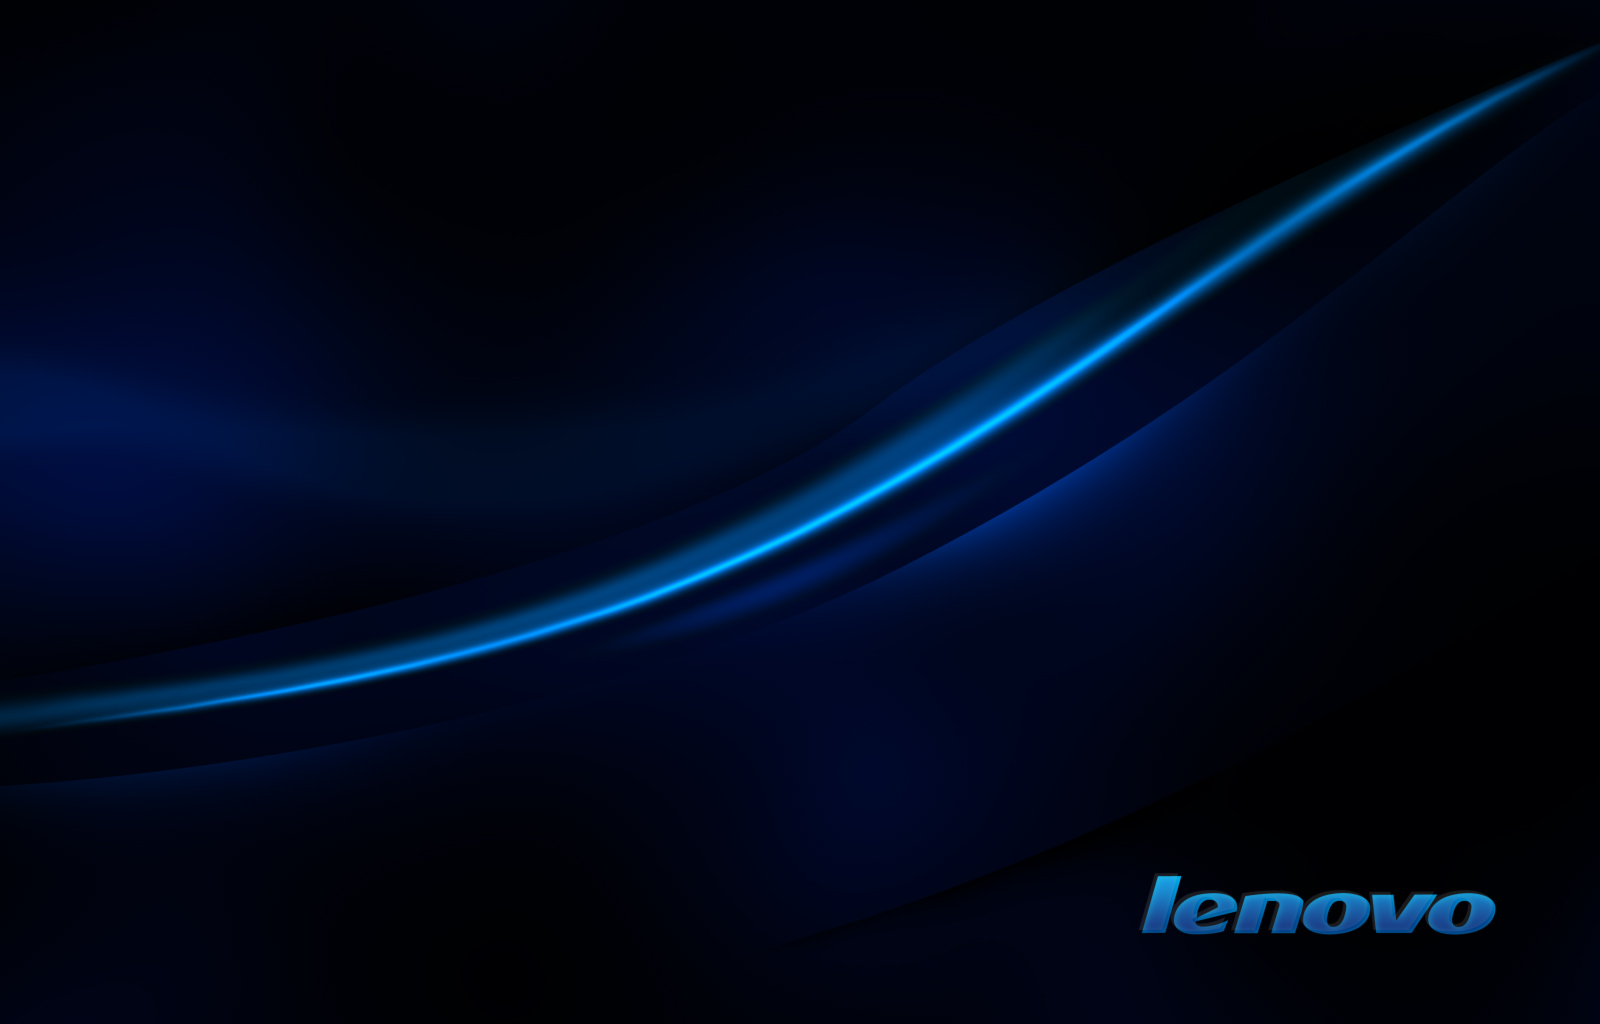 🔥 [44+] Lenovo Wallpapers 1080P | WallpaperSafari